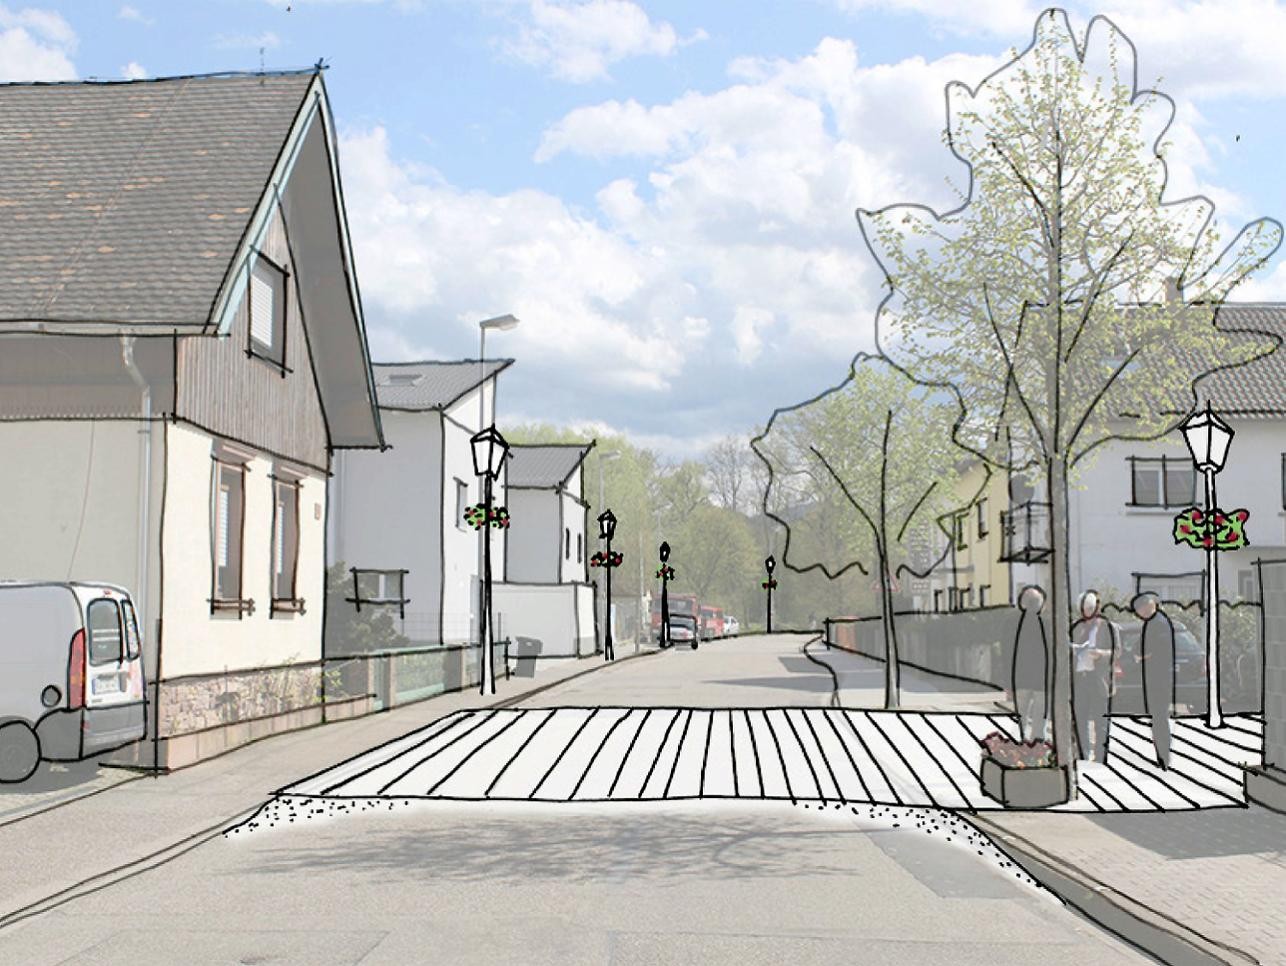 Zeichnung neue Favoritestraße in Förch mit Häusern einem Zebrastreifen und Bäumen